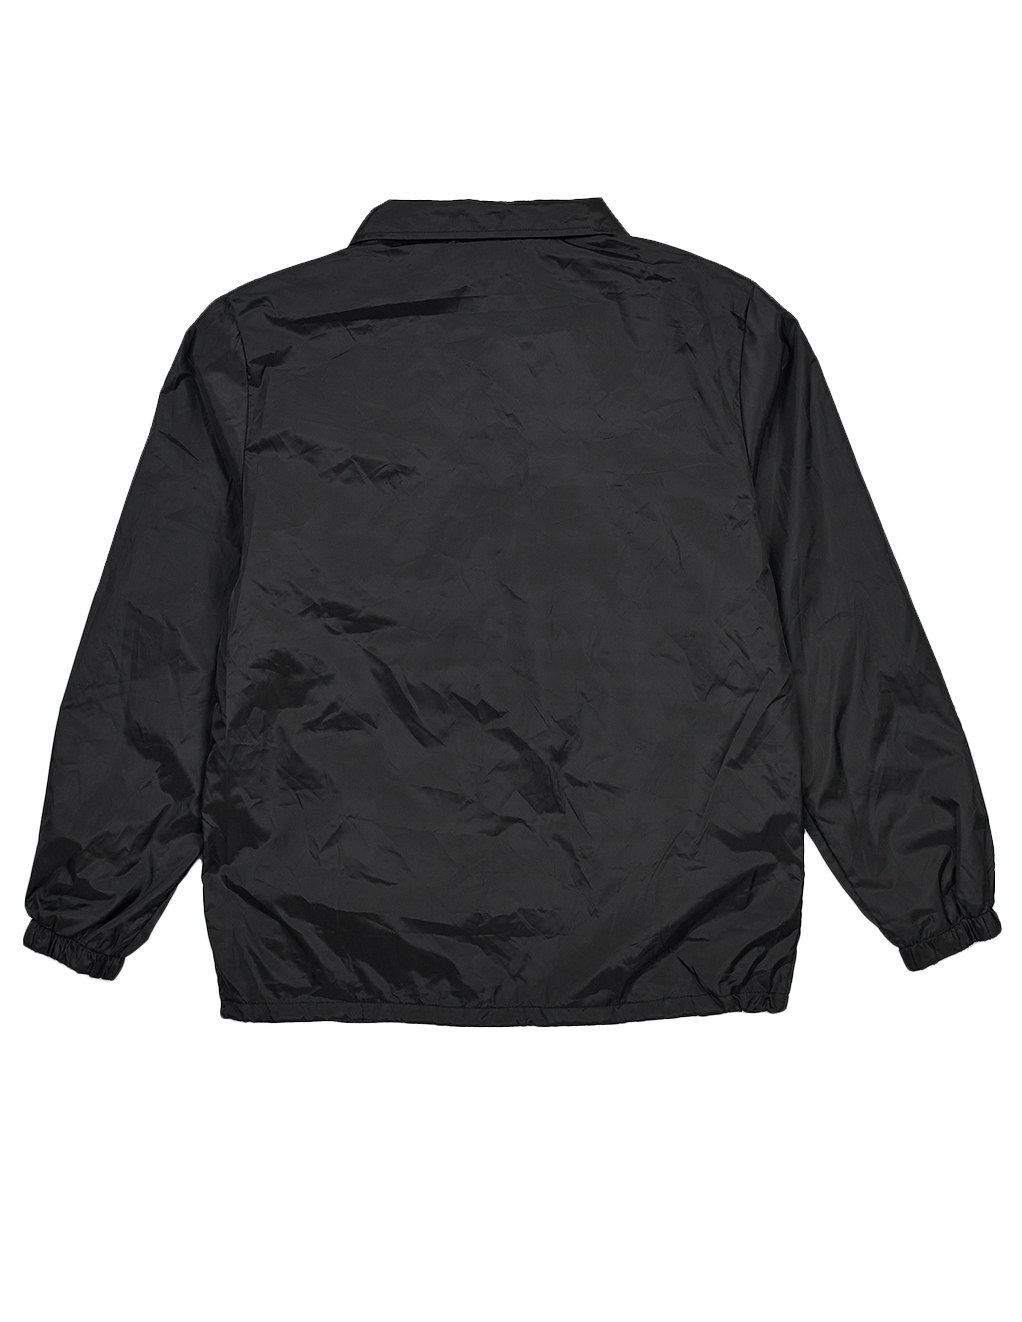 HUSTLER® Coaches Jacket - Black - Back